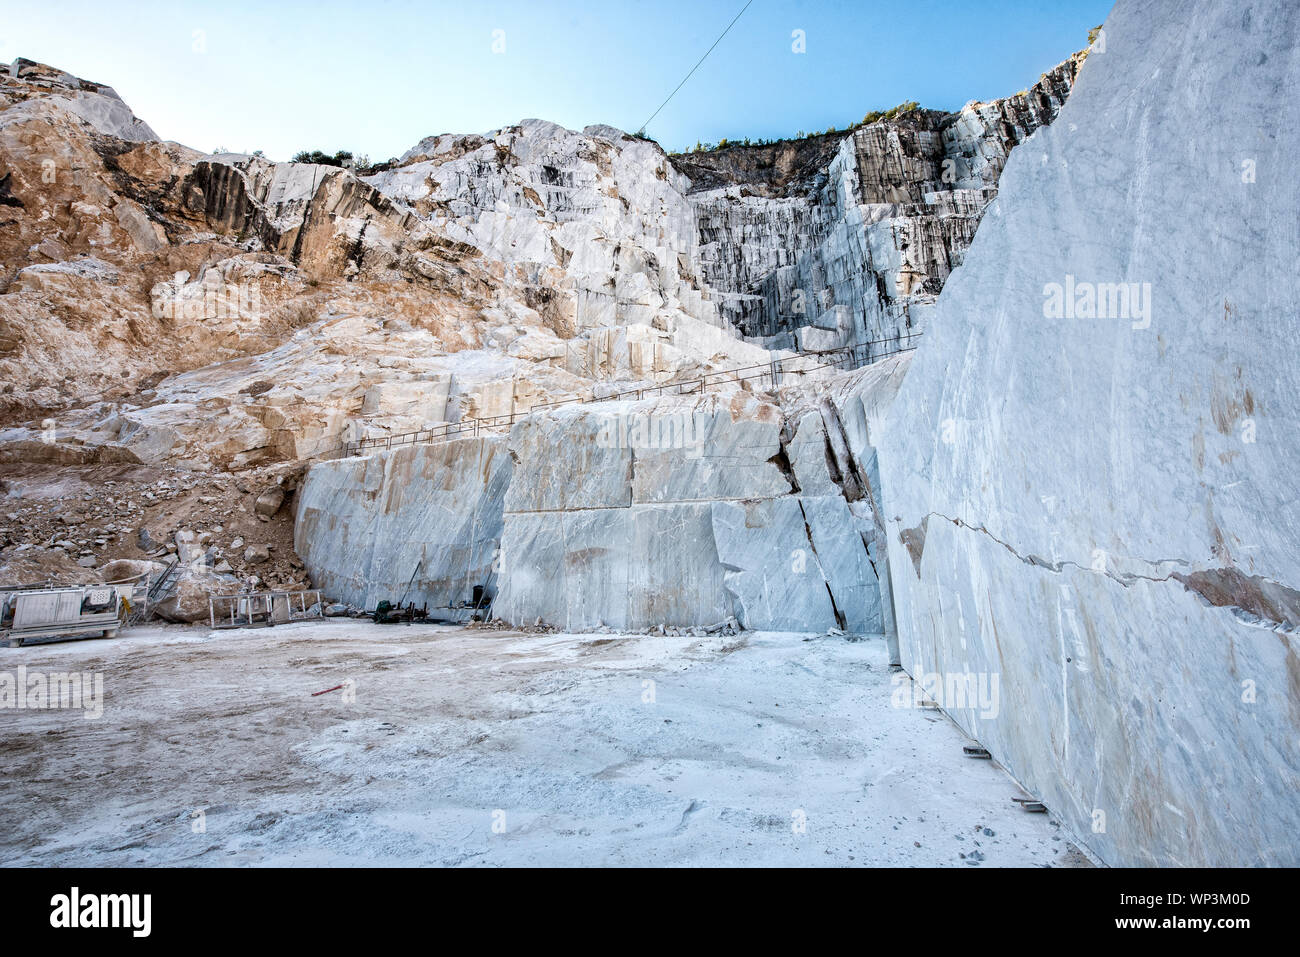 In einem Marmor Höhlen- oder Tagebau Grube mit Blick nach unten einen zurückweichenden Felswand von weißem Marmor aus Carrara in der Toskana, Italien Stockfoto